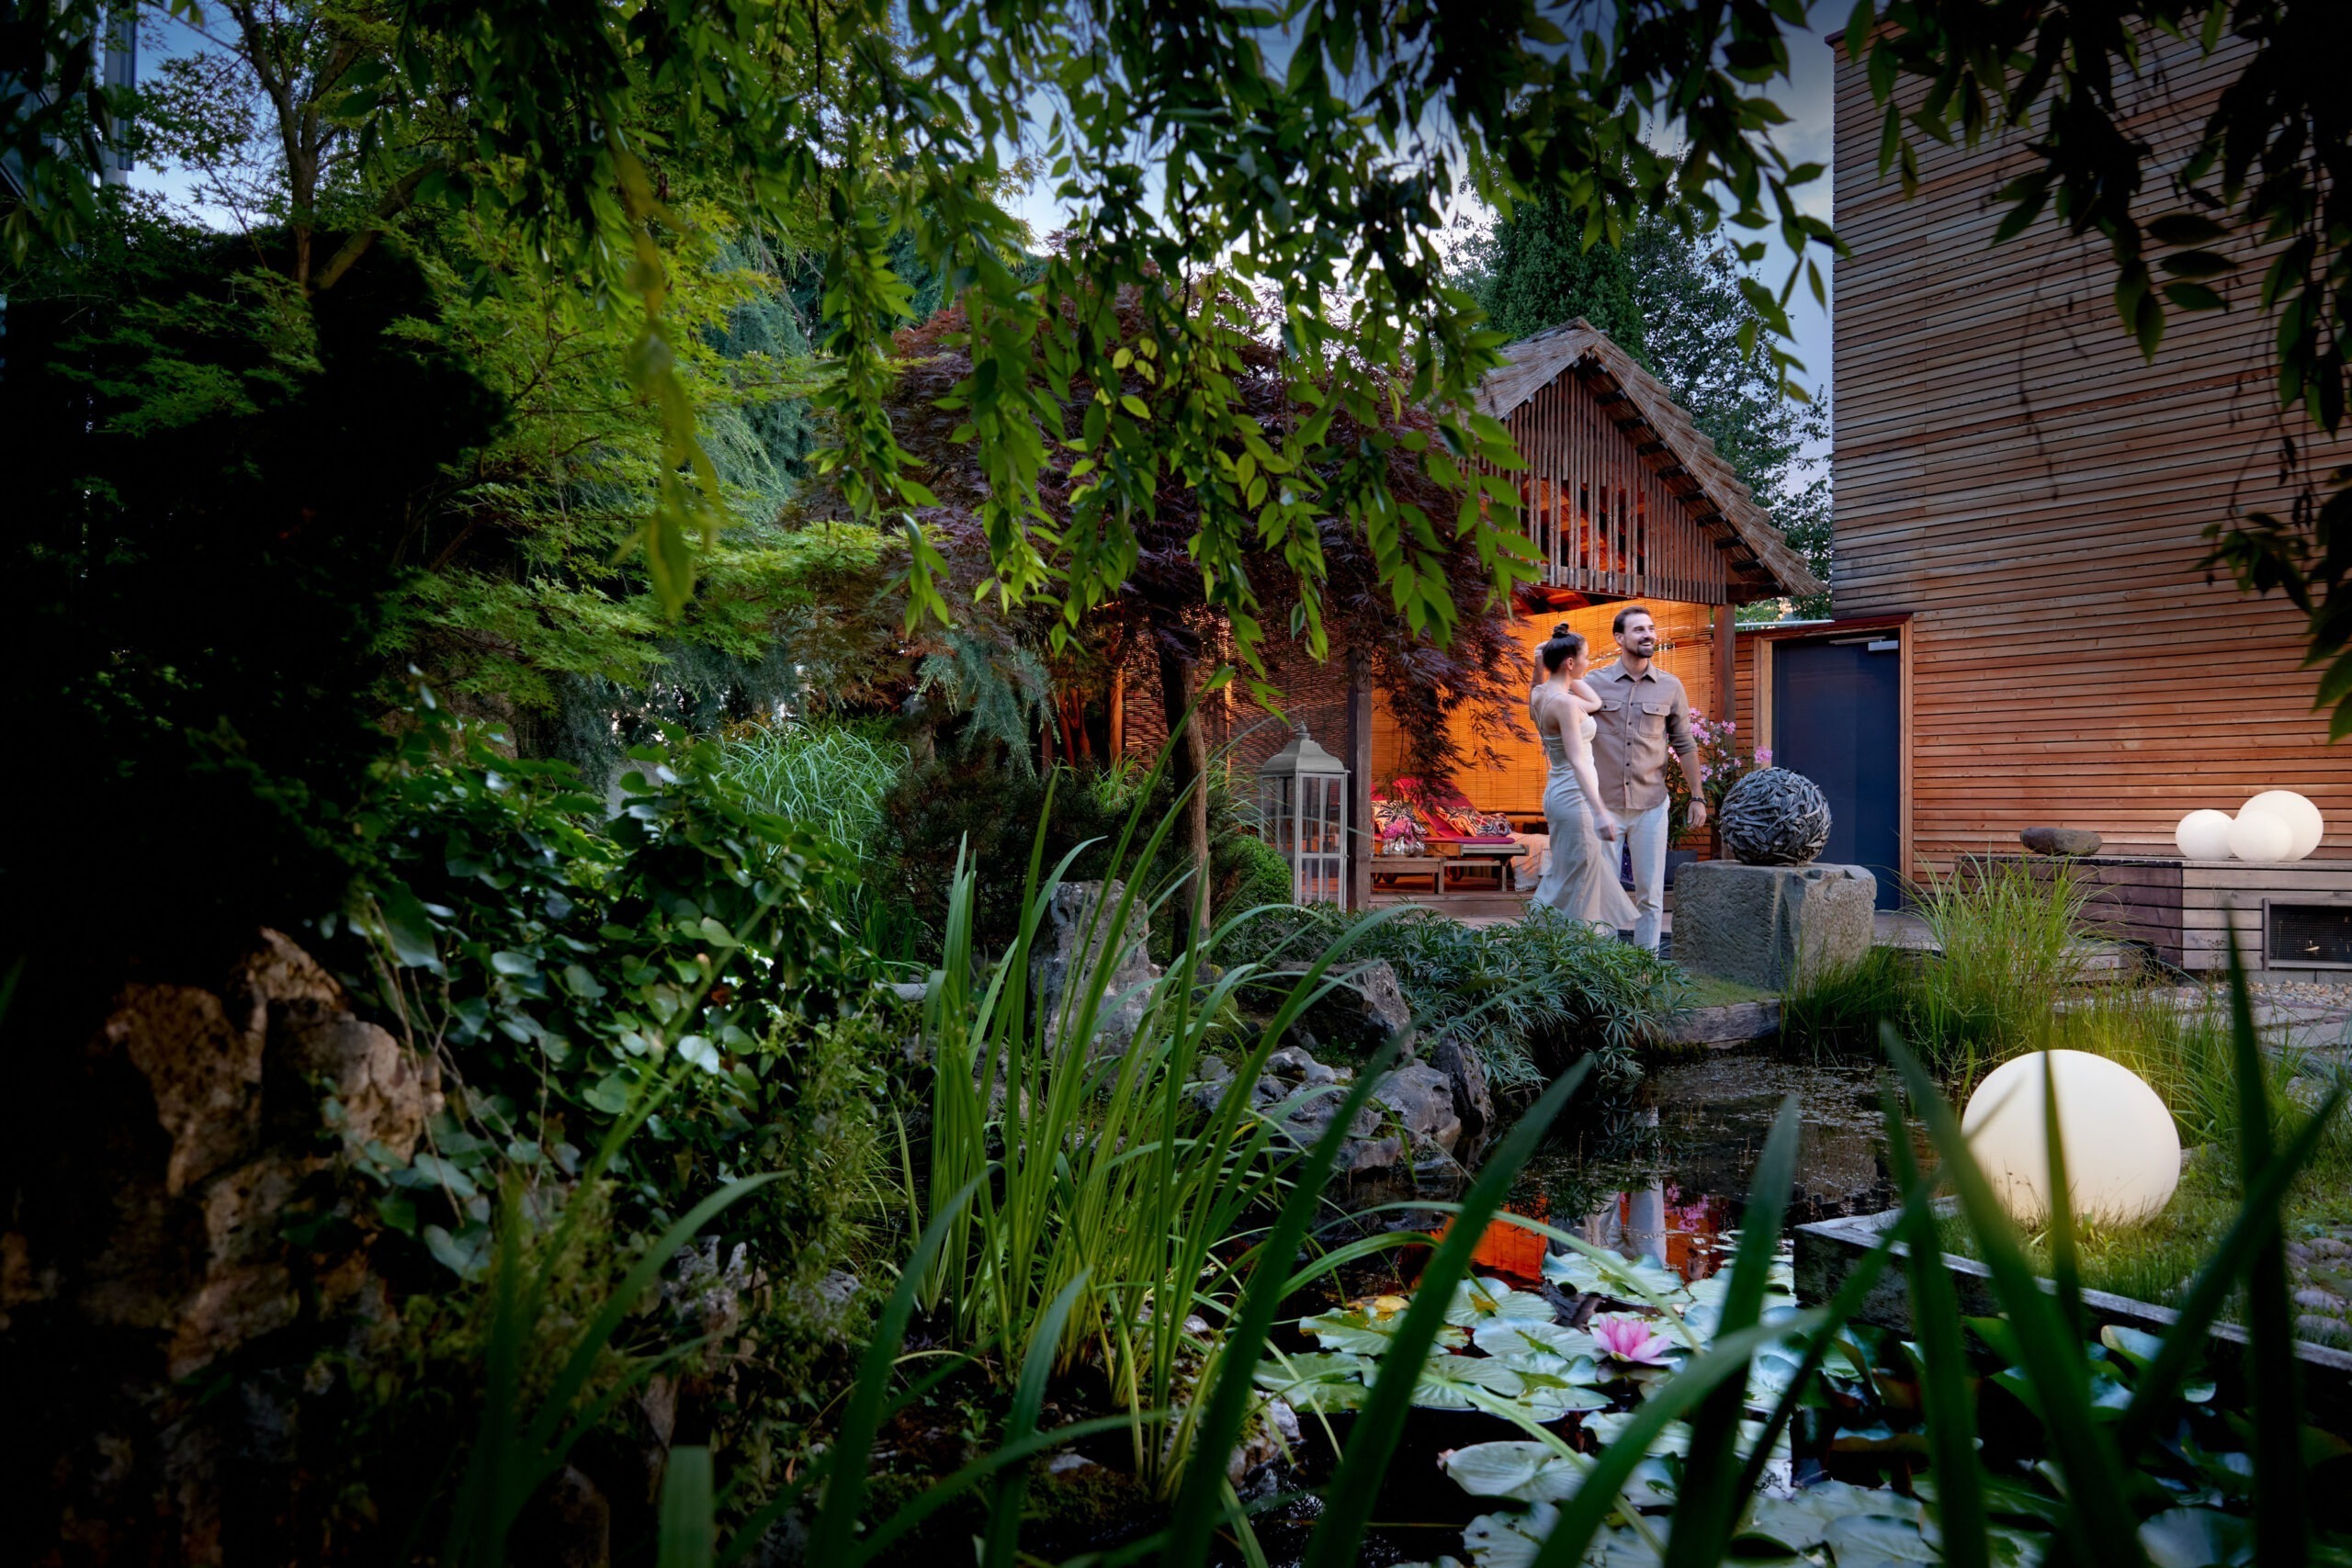 Paar spaziert durch Ganesha's Garten, umgeben von üppigem Grün, Teich mit Seerosen und einer gemütlich beleuchteten Holzhütte im Hintergrund.